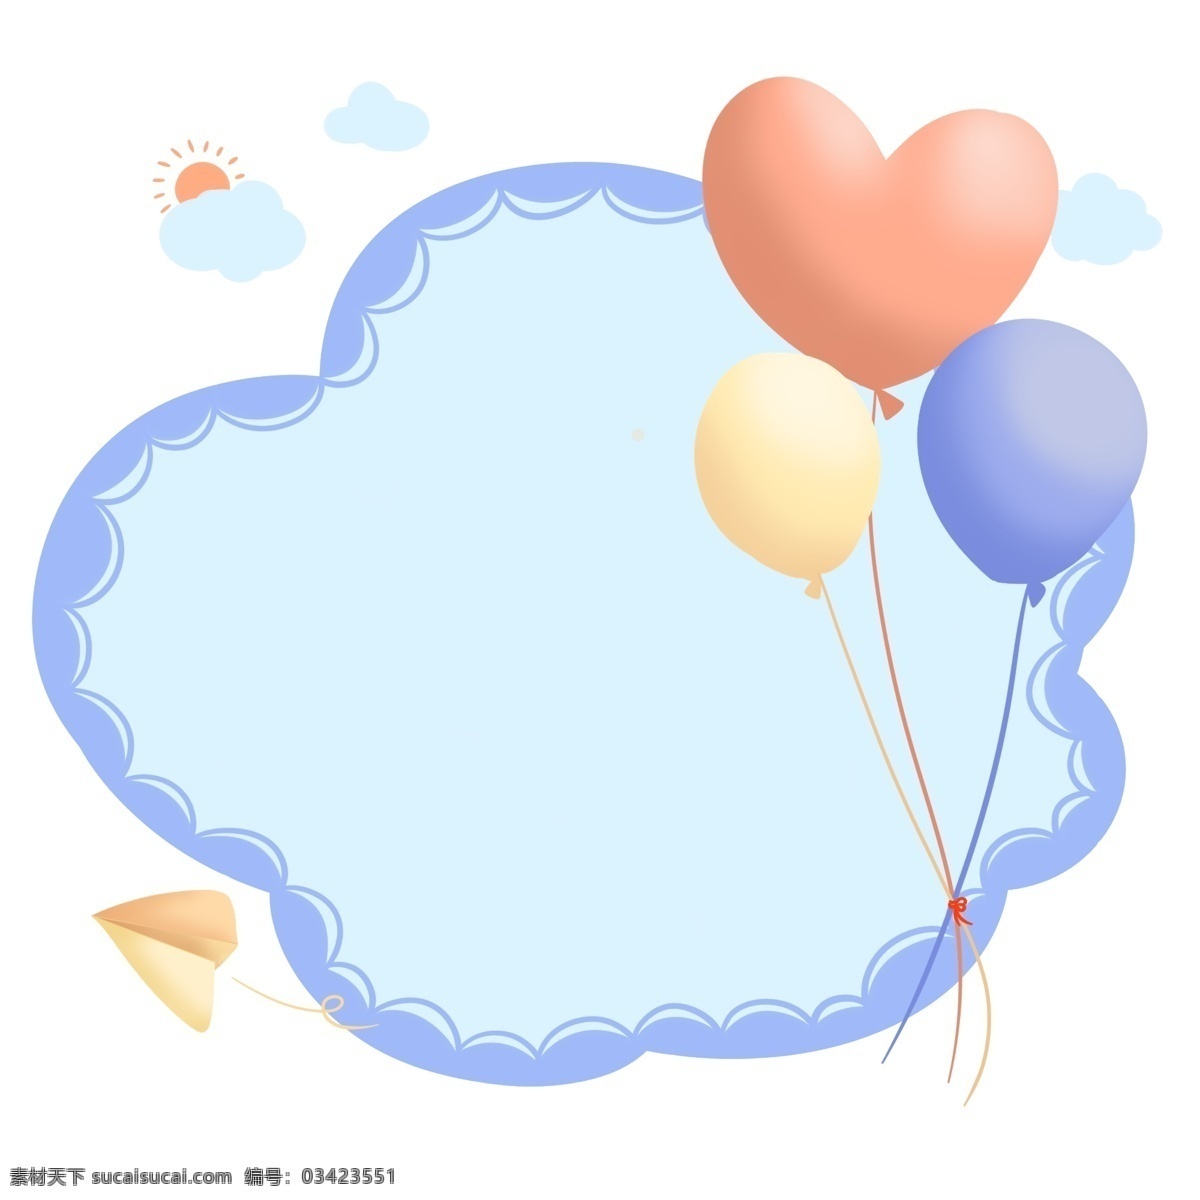 六一节 可爱 气球 小 白云 边框 小白云边框 天空 云彩 太阳 纸飞机 童趣 儿童卡通